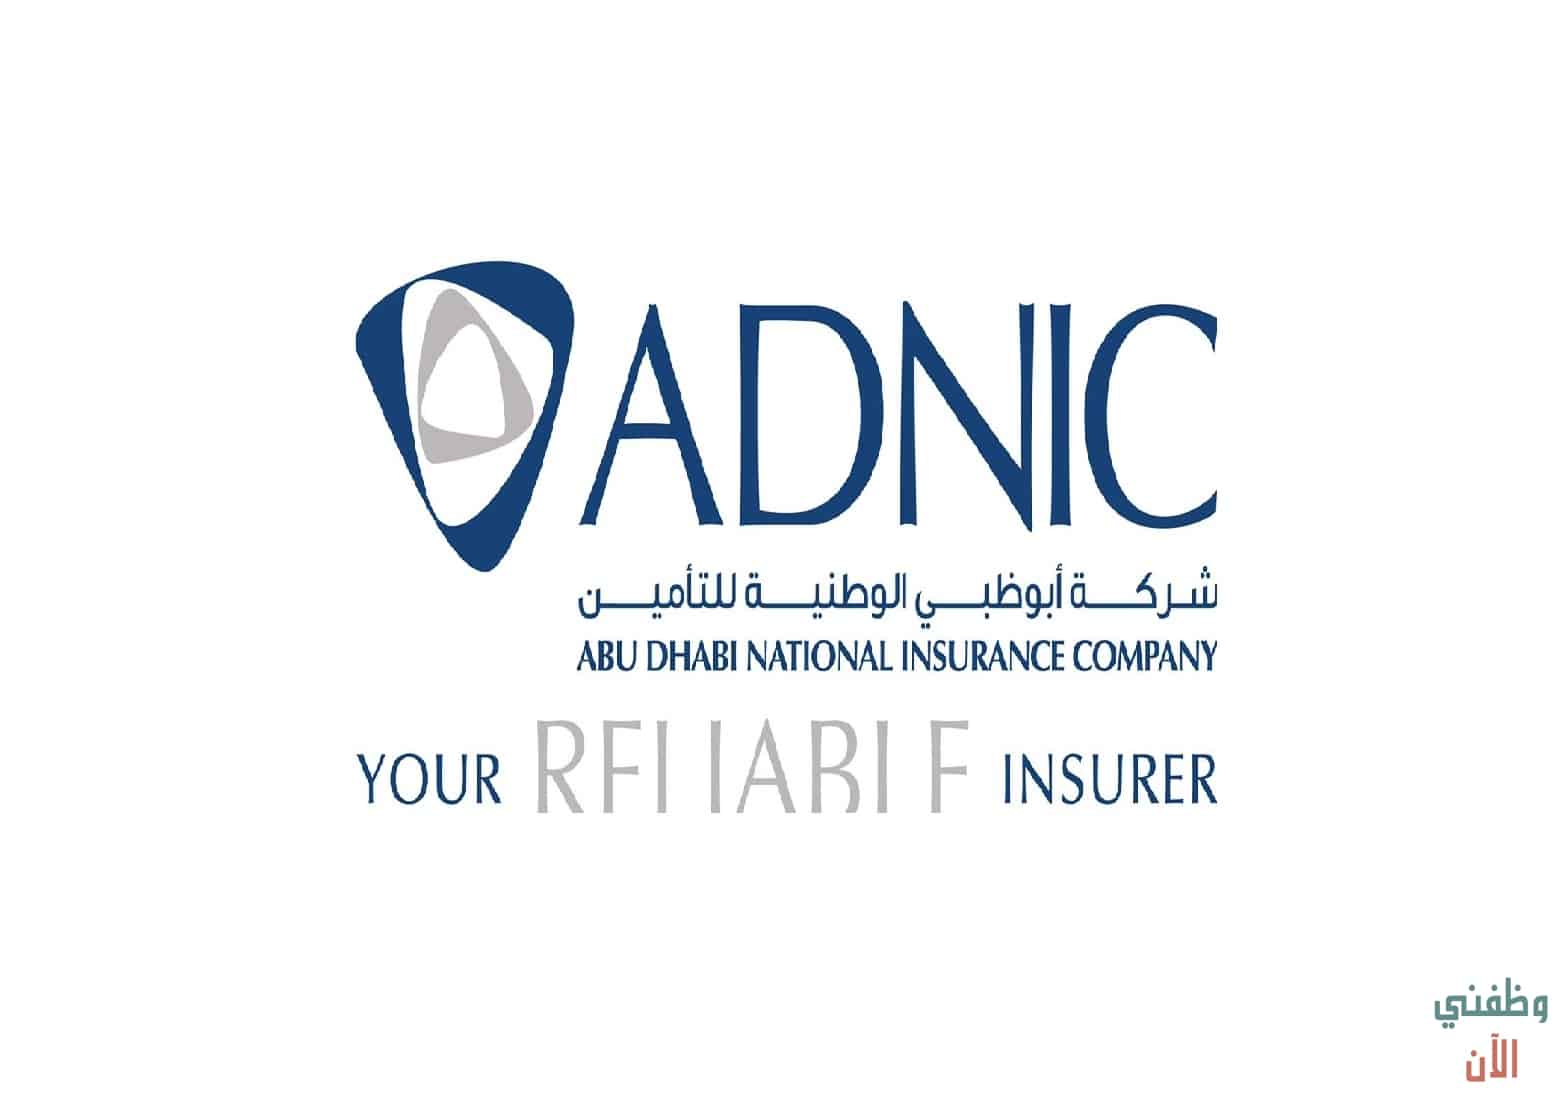 مطلوب موظفين بشركة أبوظبي الوطنية للتأمين لعام (2021)